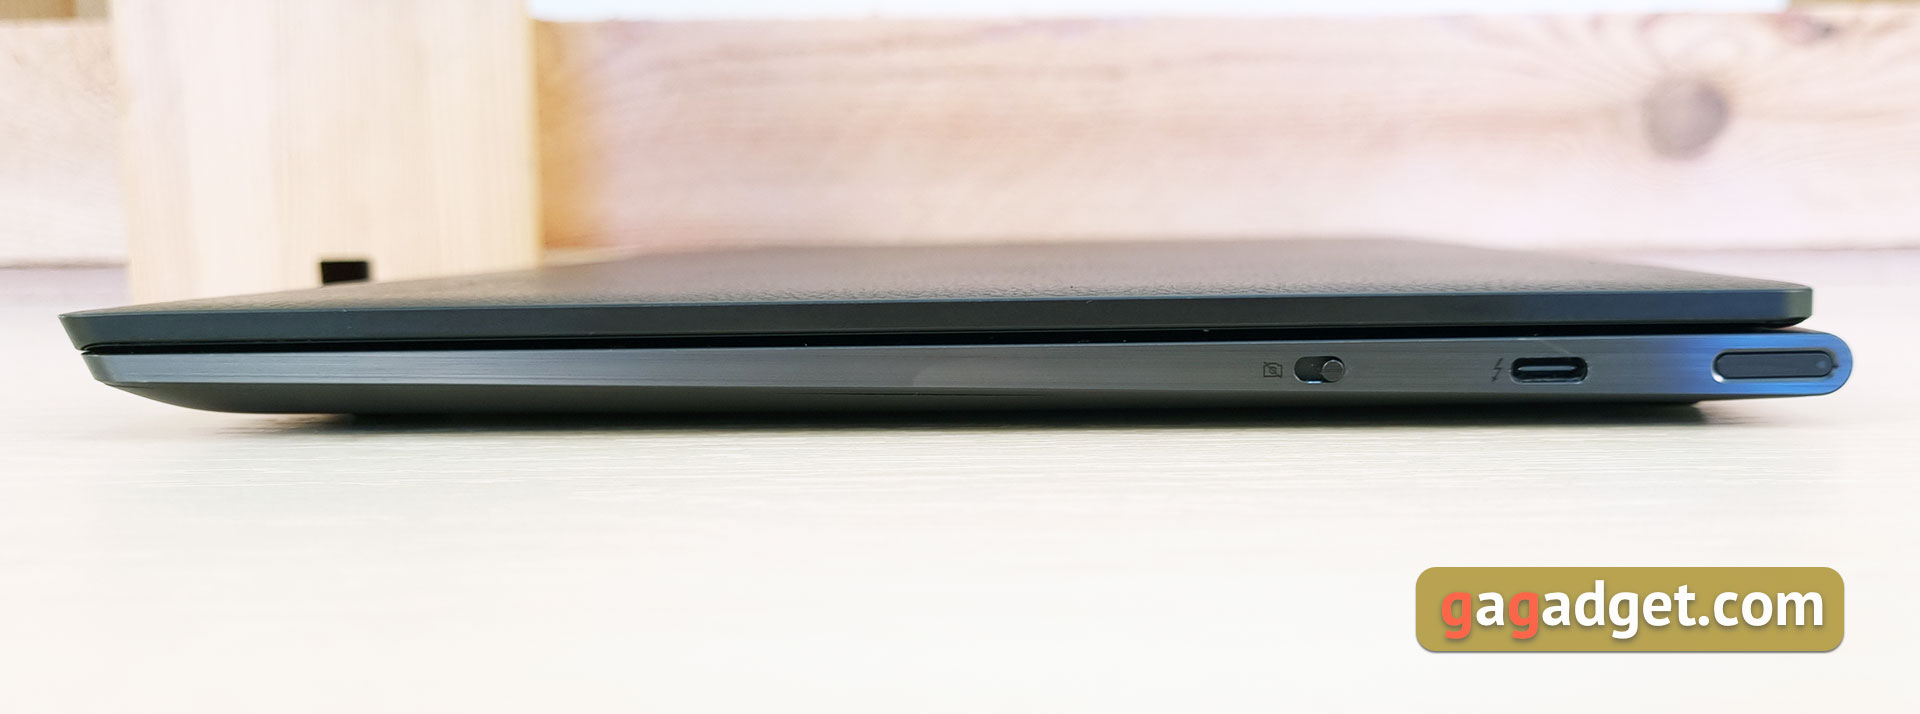 Lenovo Yoga Slim 9i Laptop Review-11